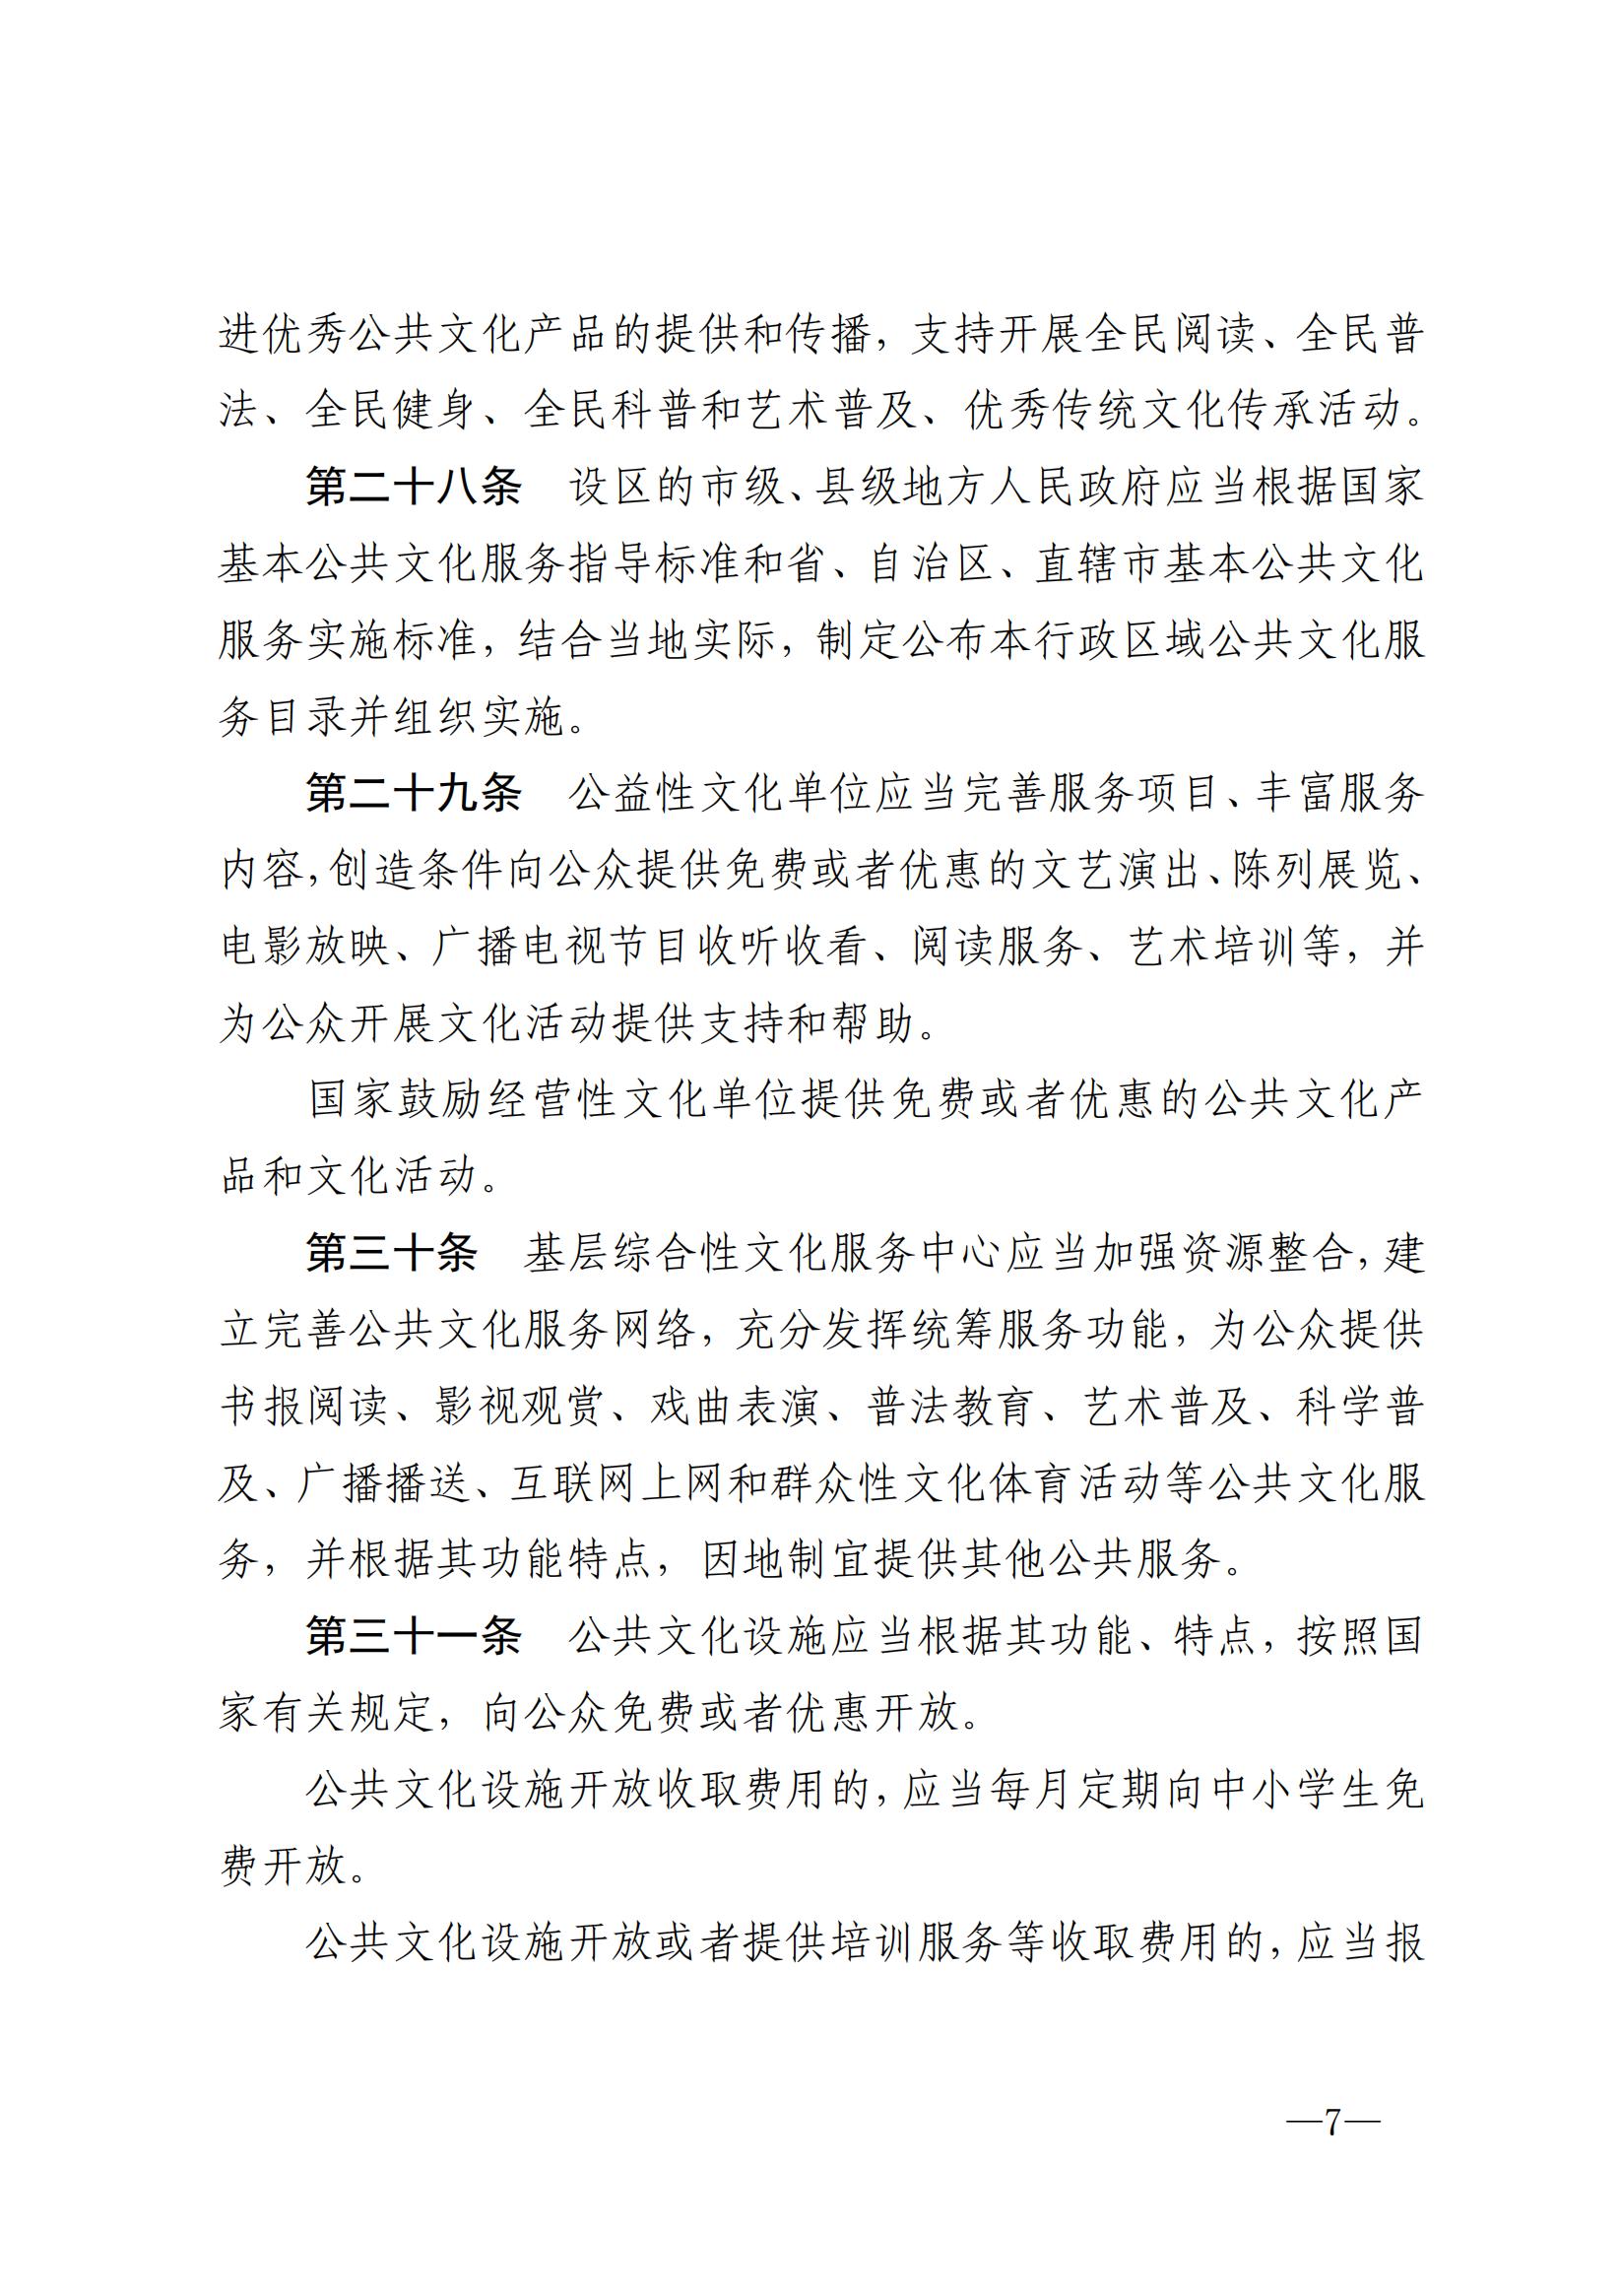 中华人民共和国公共文化服务保障法_06.jpg